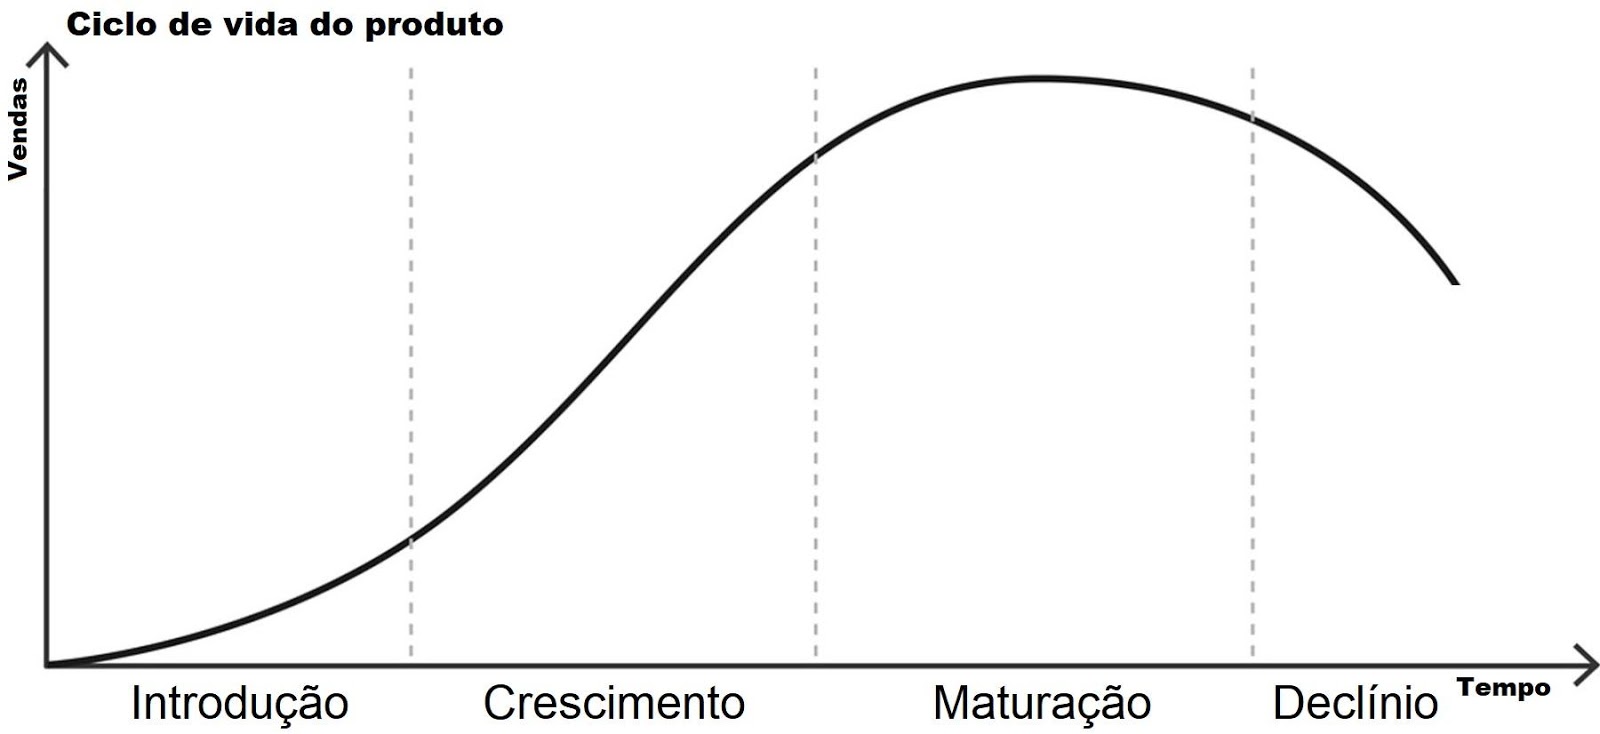 gráfico com as fases do ciclo de vida do produto